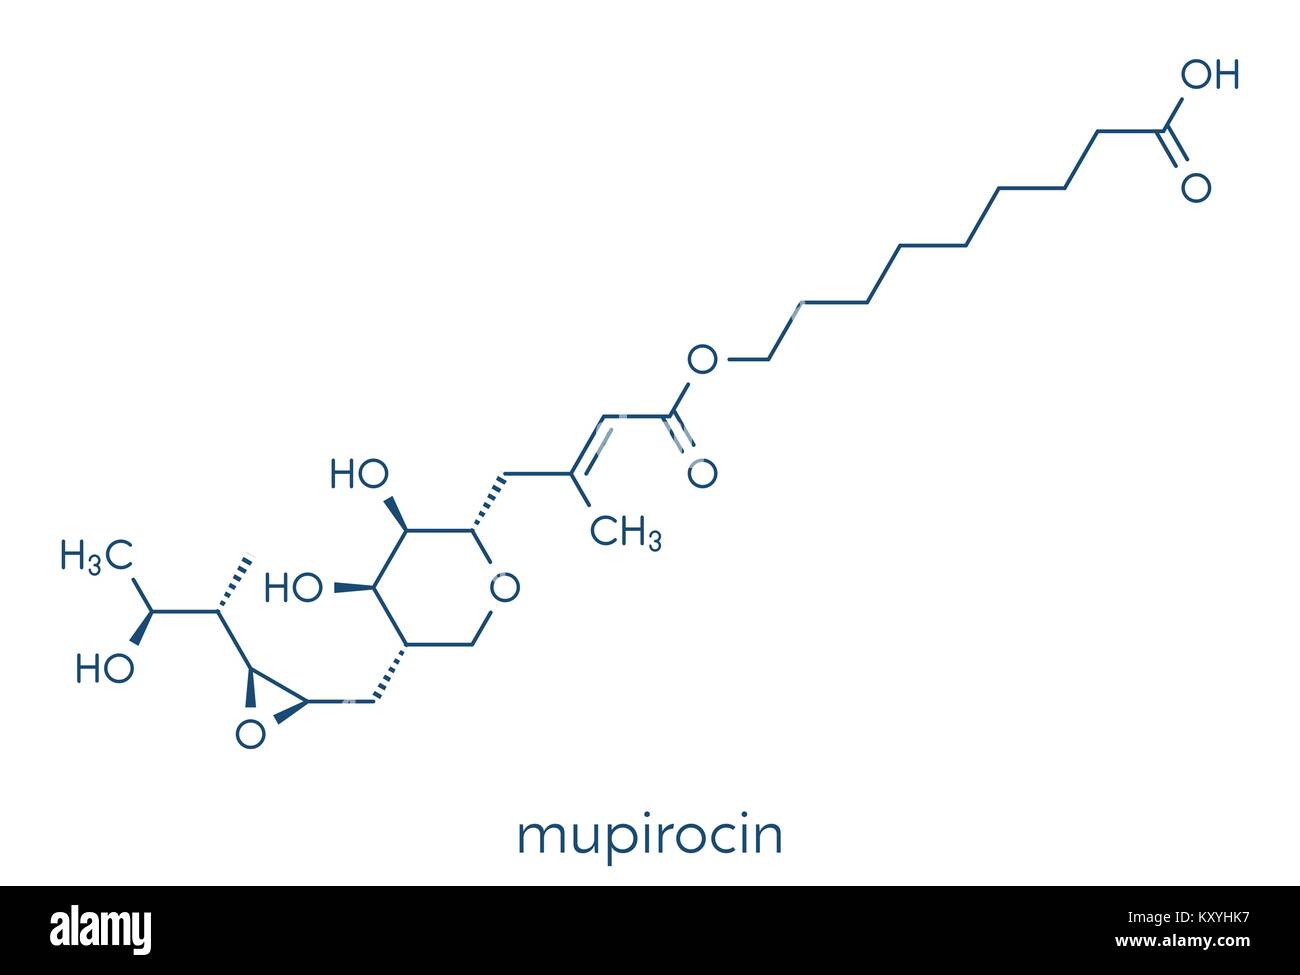 Mupirocin (pseudomonic Säure) Antibiotikum Medikament Molekül. Aktuell gegen gram-positive Bakterien verwendet. Skelettmuskulatur Formel. Stock Vektor